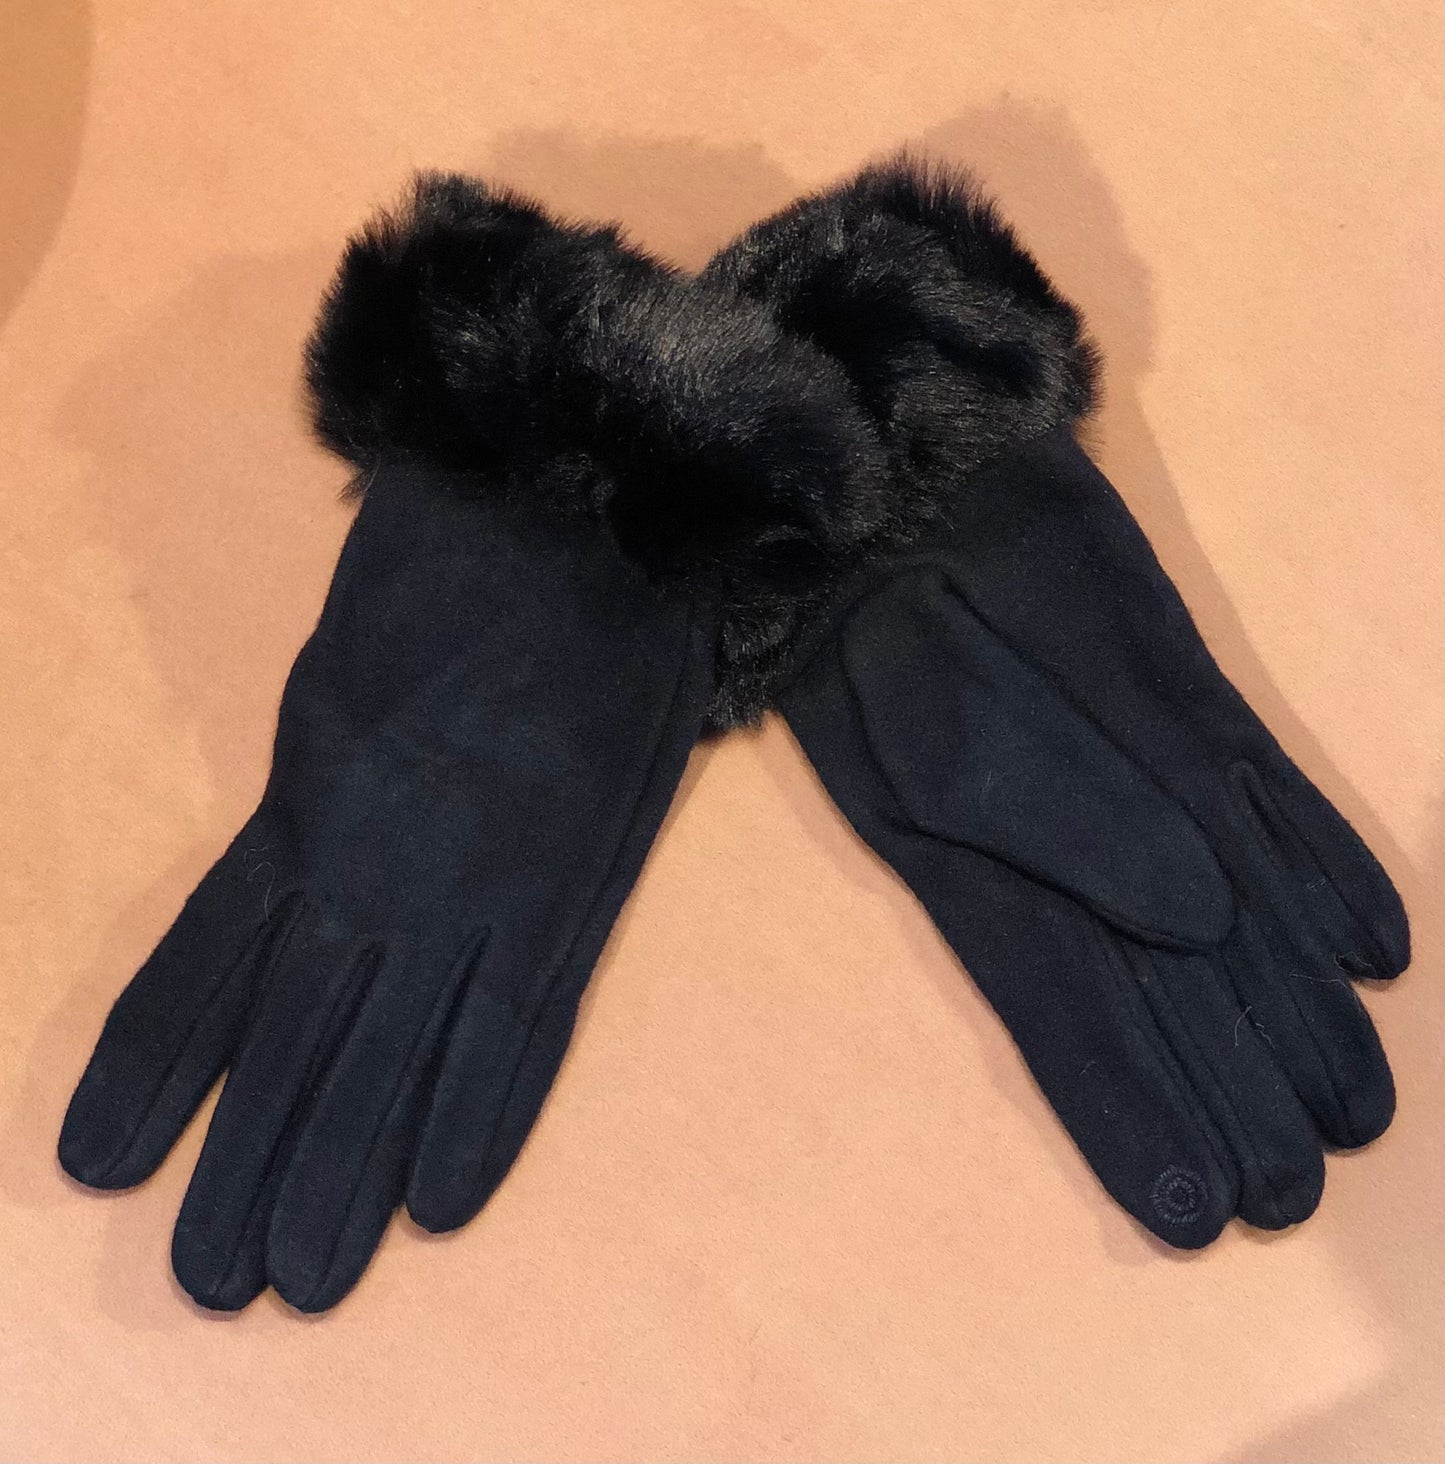 GK- 0320 Gloves